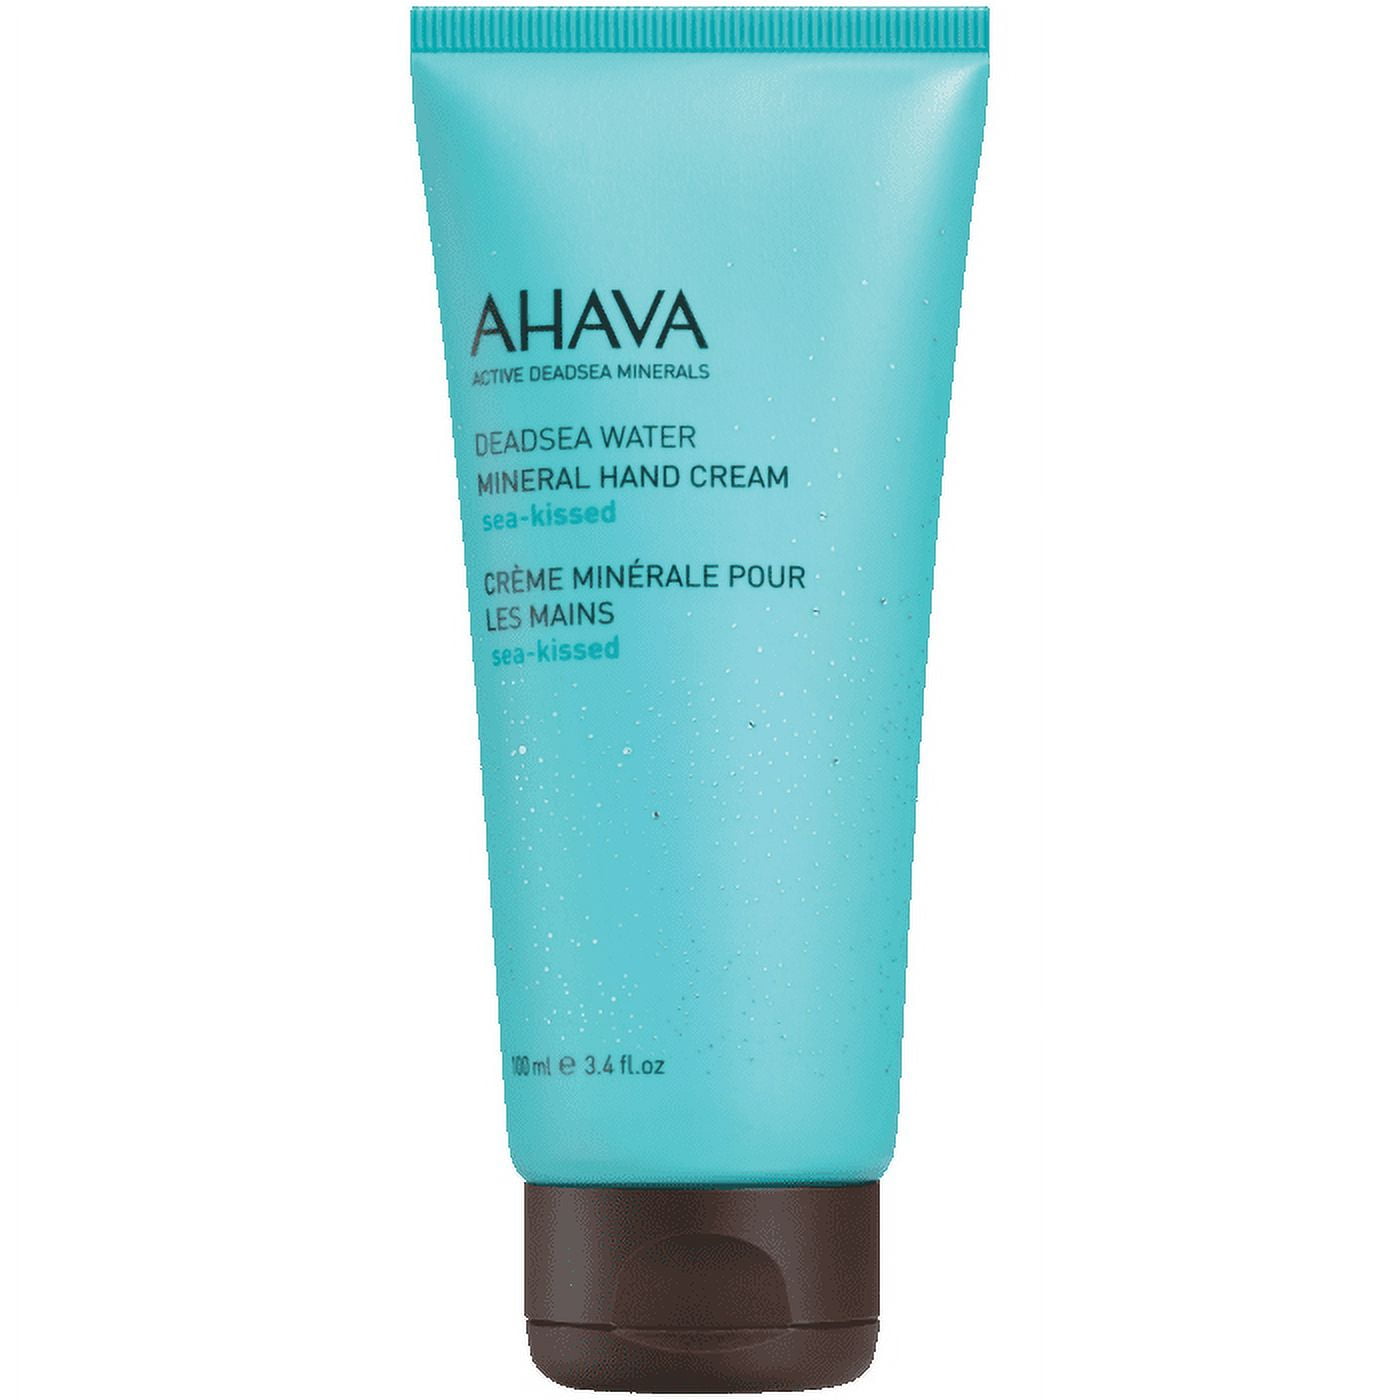 Ahava leave-on deadsea mud dermud intensive hand cream 3.4 oz / 100 ml | Körpercremes